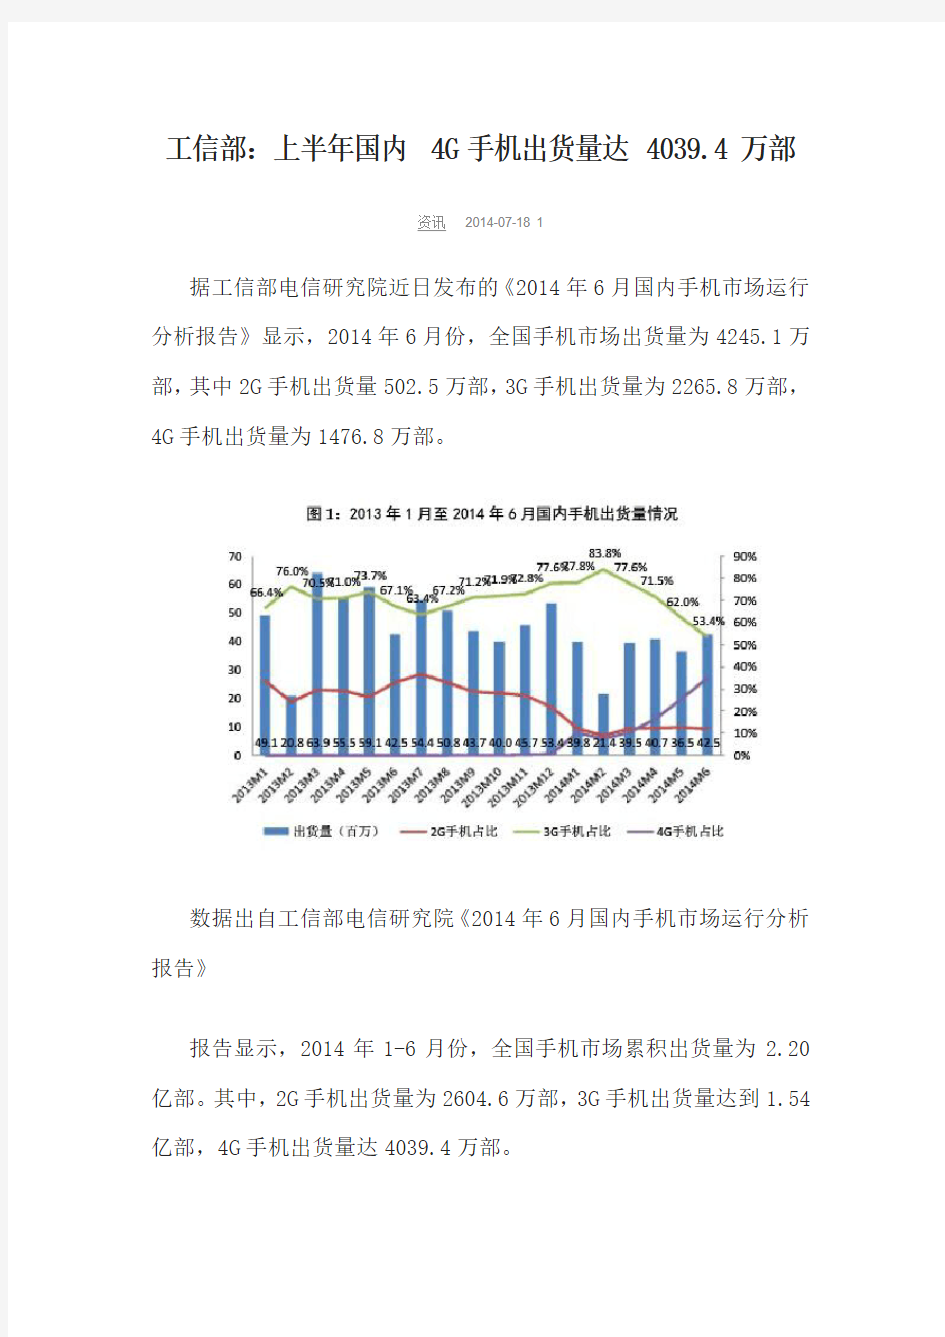 2014年6月中国智能手机的出货量